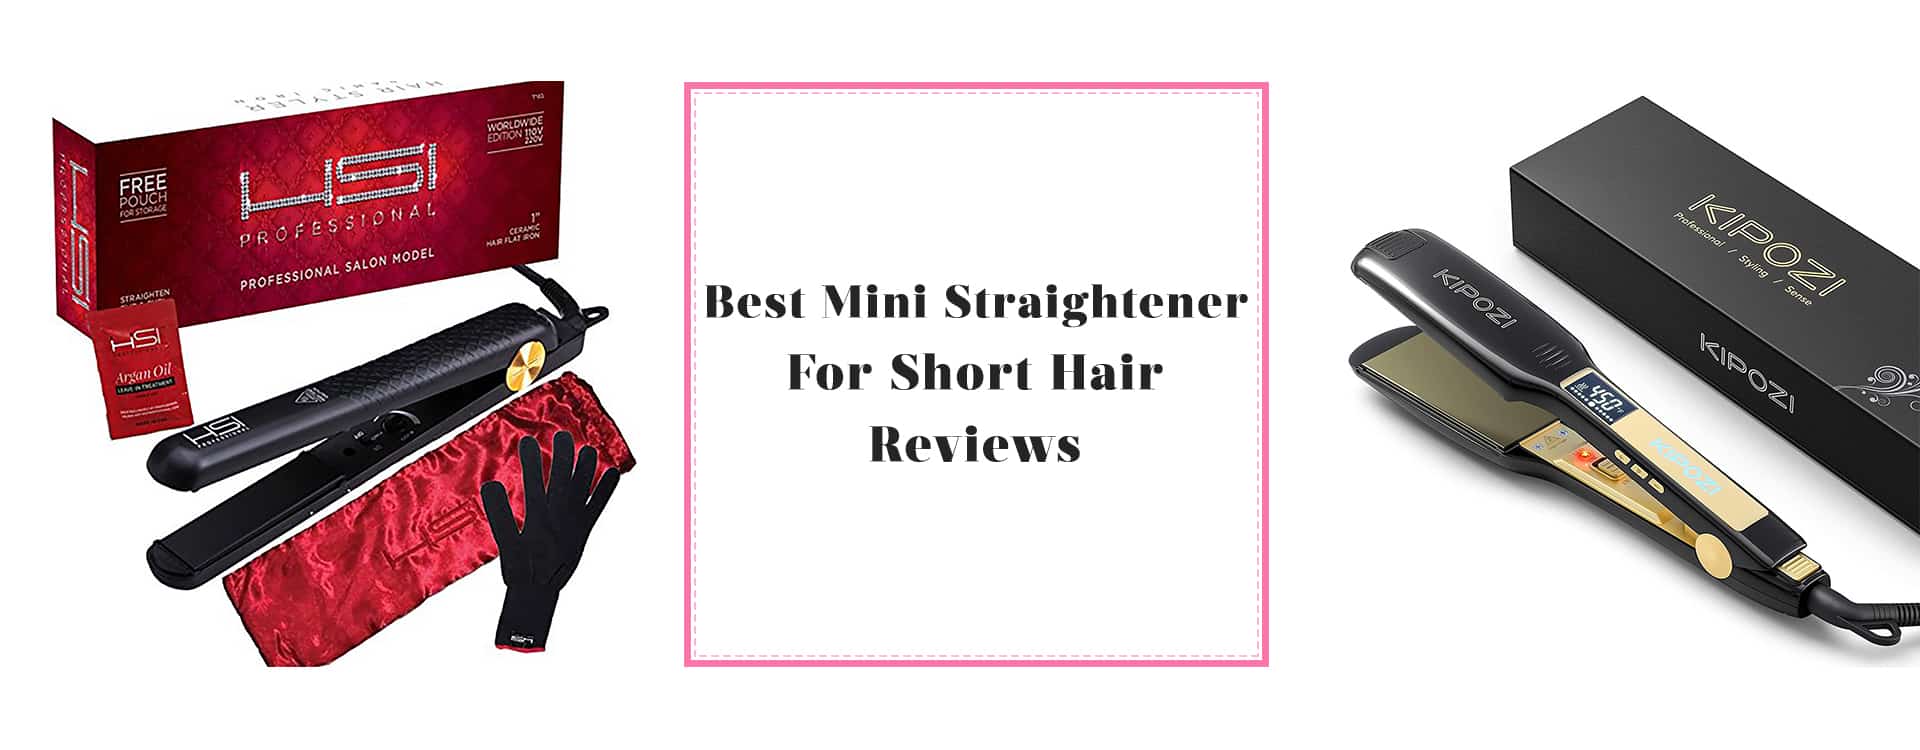 Best Mini Straightener For Short Hair reviews